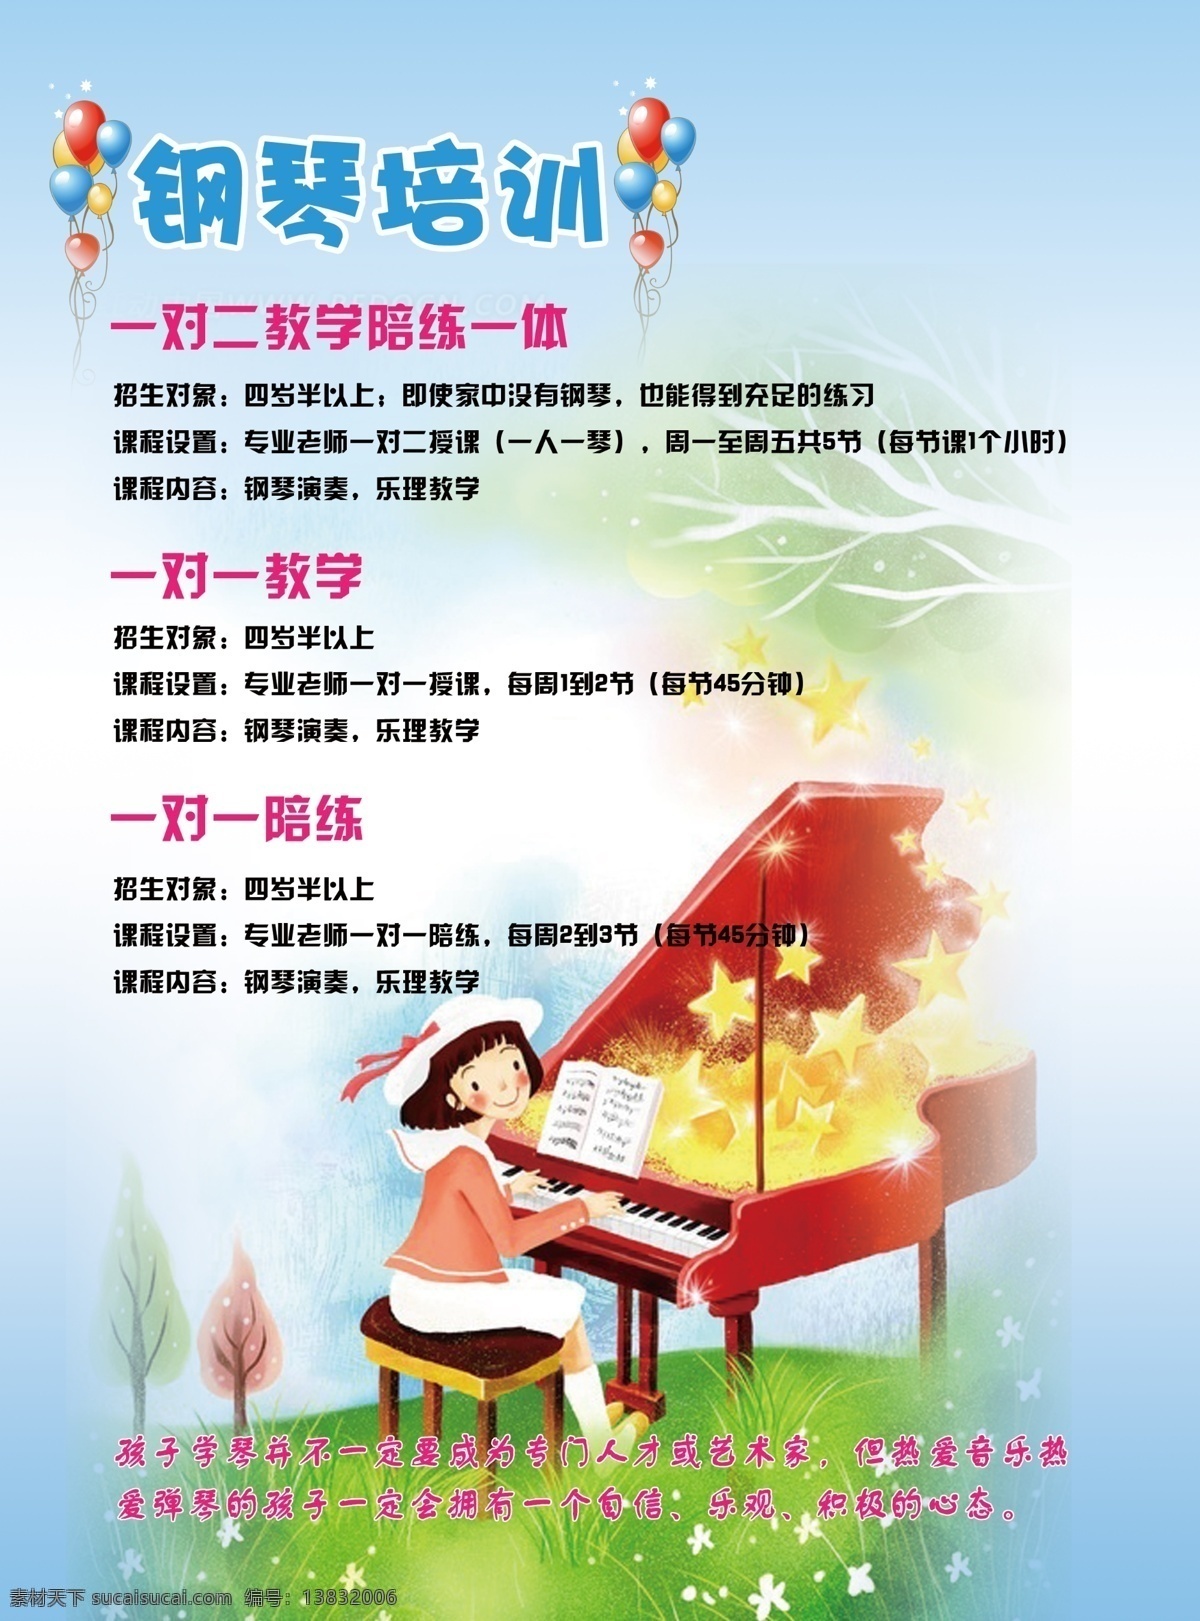 钢琴 教学班 招生 宣传海报 女孩 钢琴招生 海报 儿童钢琴教学 宣传单 彩页 dm